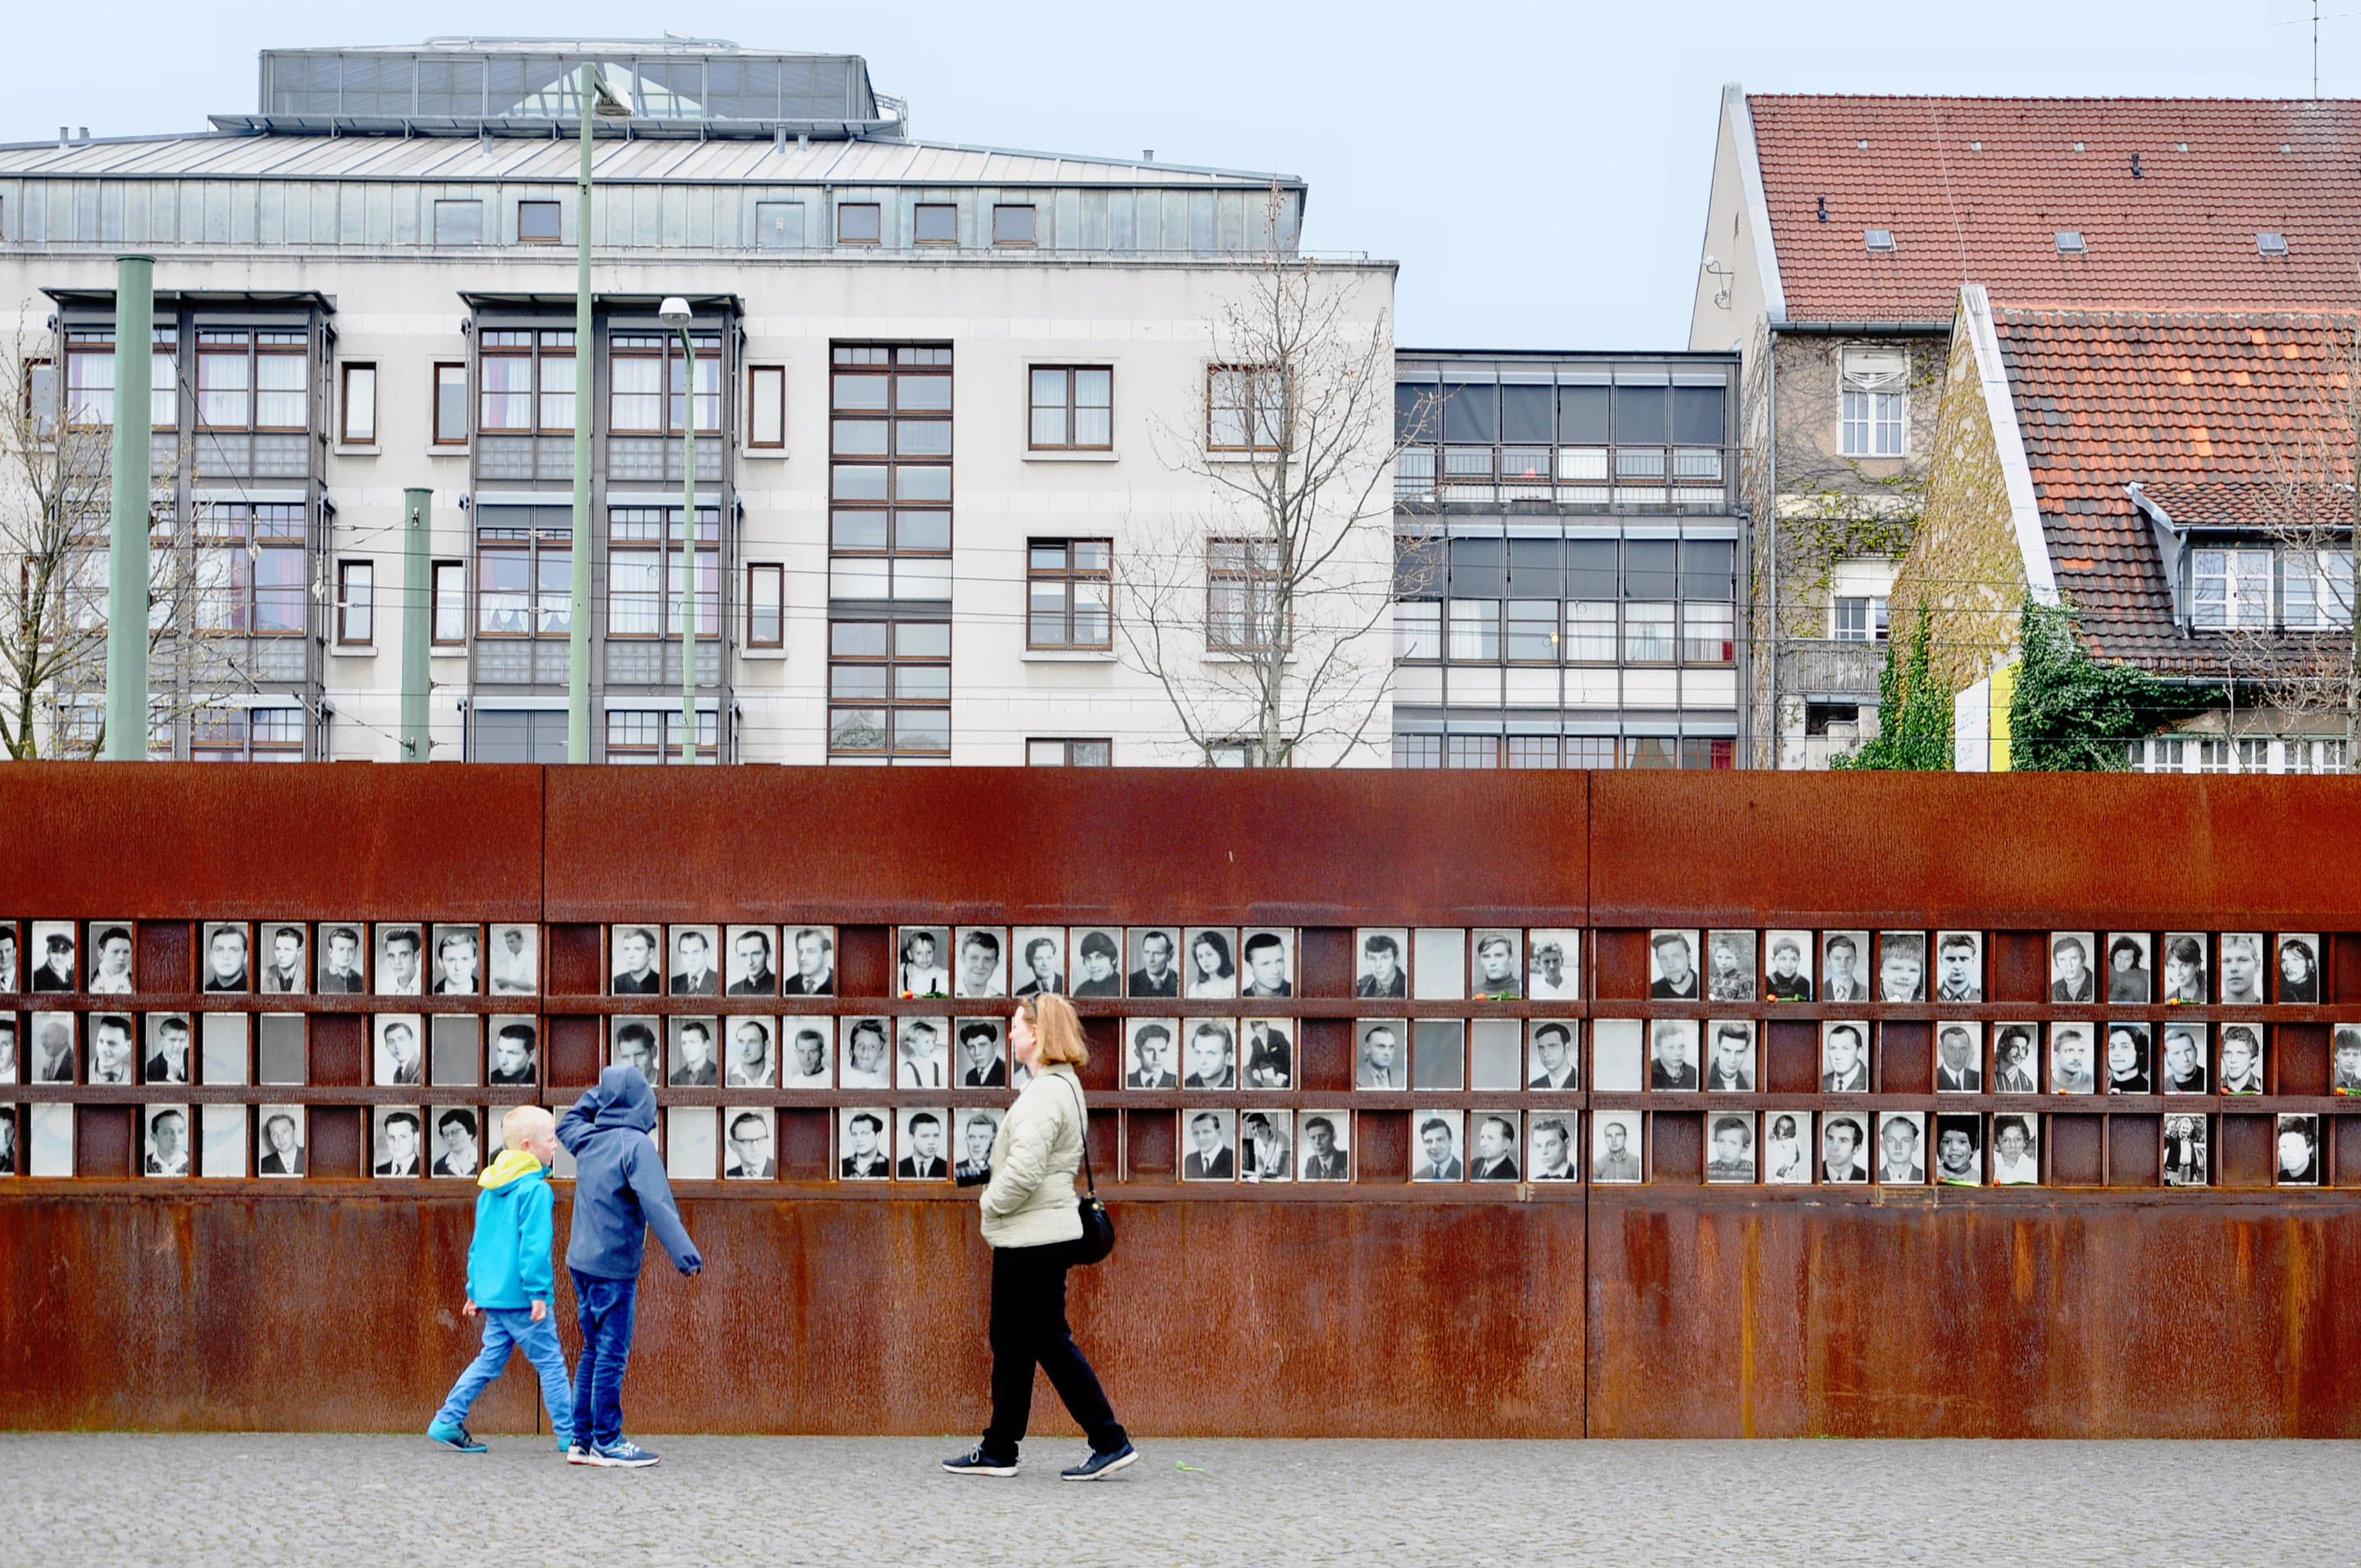 Berlin Wall Memorial Overview